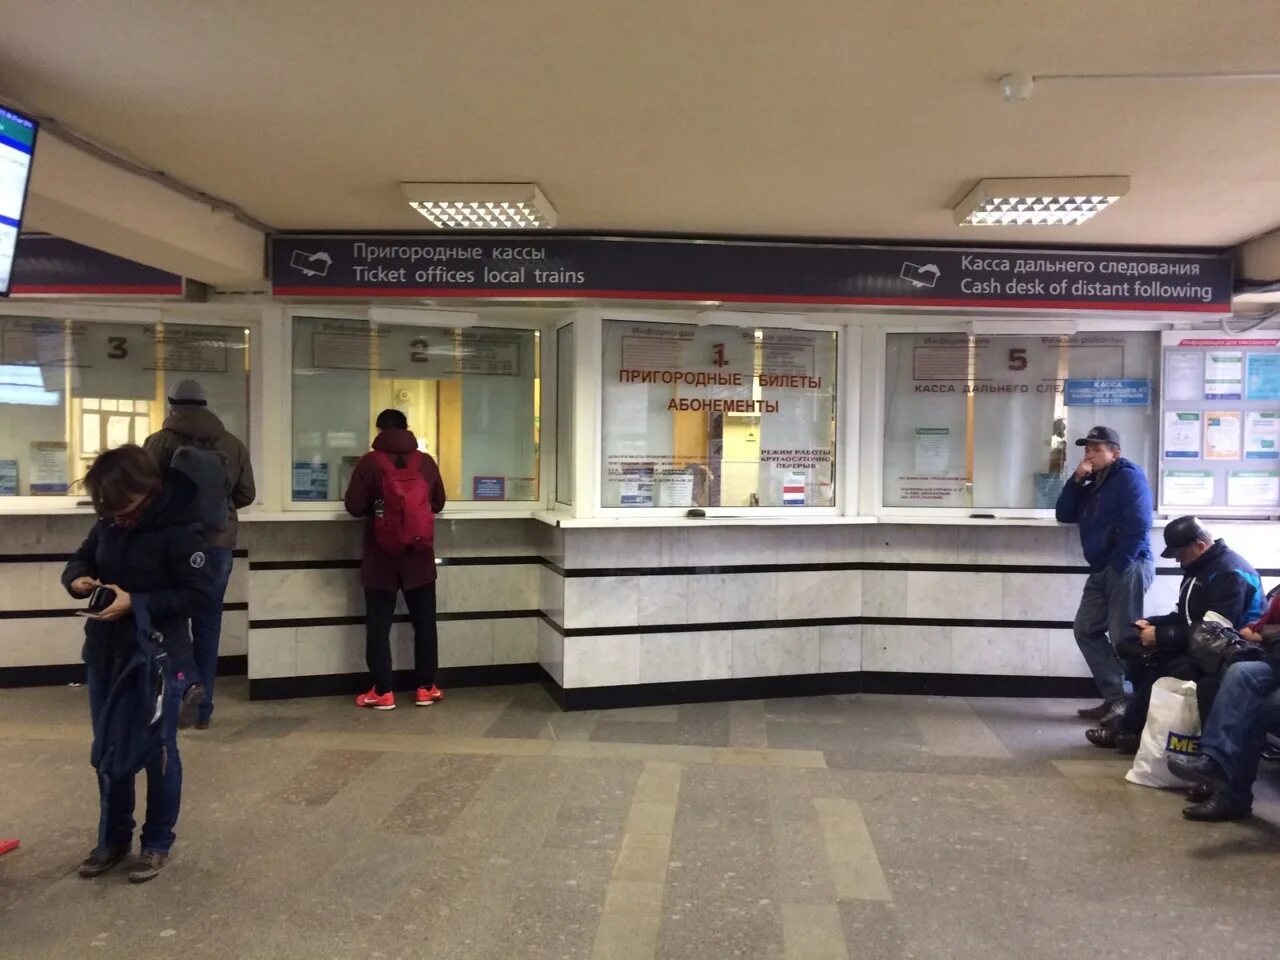 Кассы вологда телефон. Пригородные кассы ЖД вокзала Новосибирск. Кассы железнодорожных билетов. Касса на вокзале. Билетная касса ЖД.